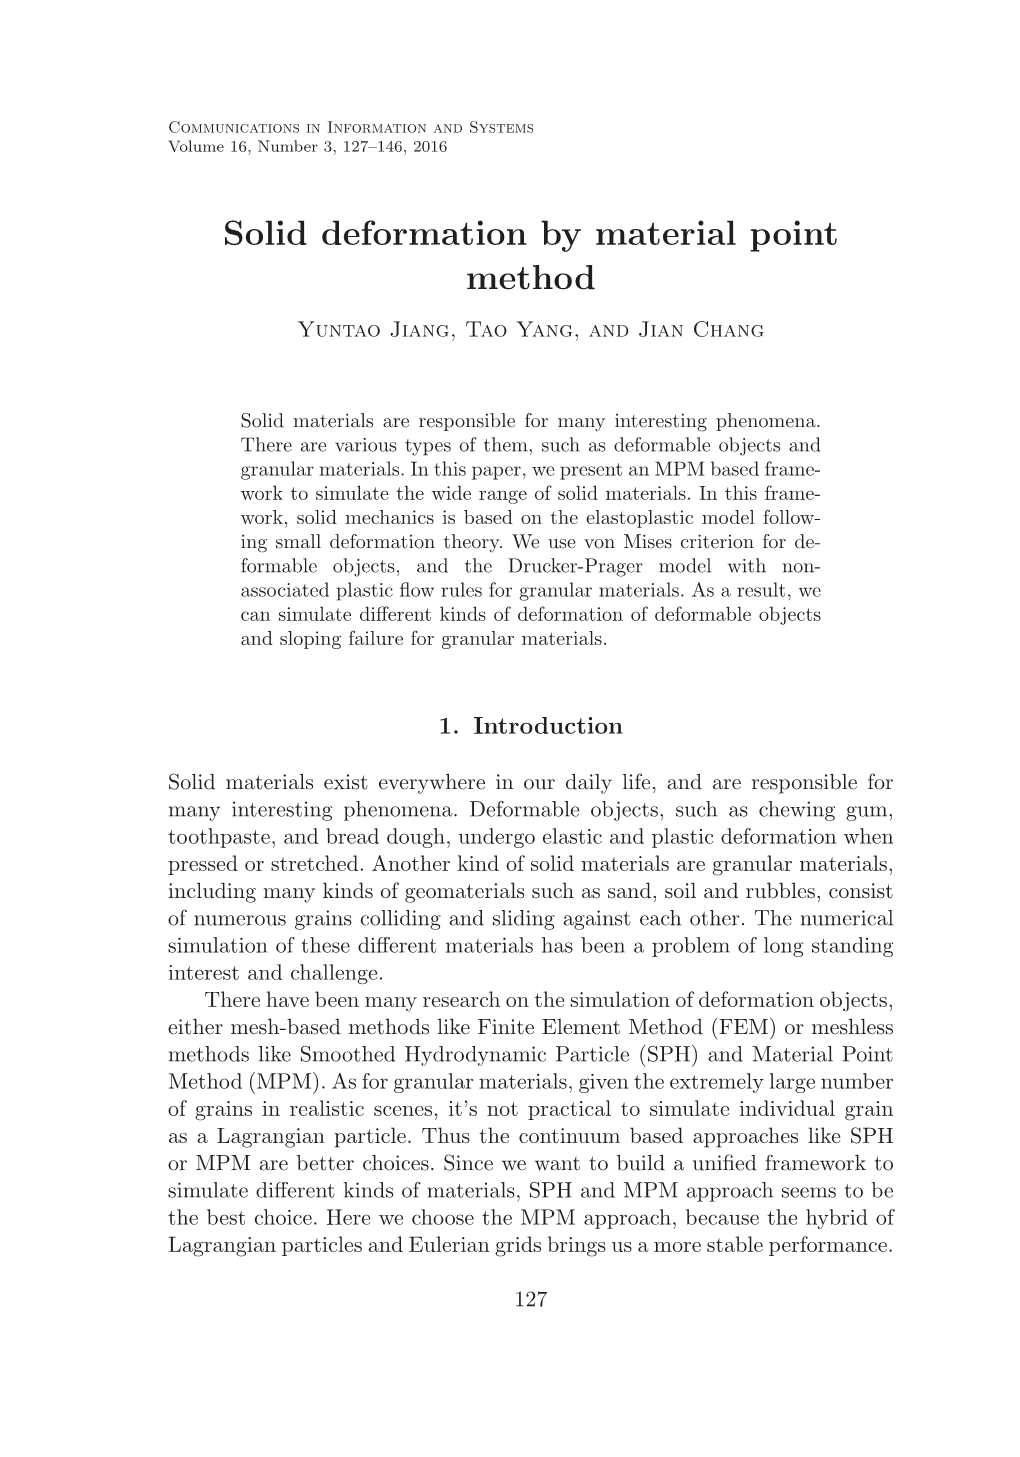 Solid Deformation by Material Point Method Yuntao Jiang, Tao Yang, and Jian Chang